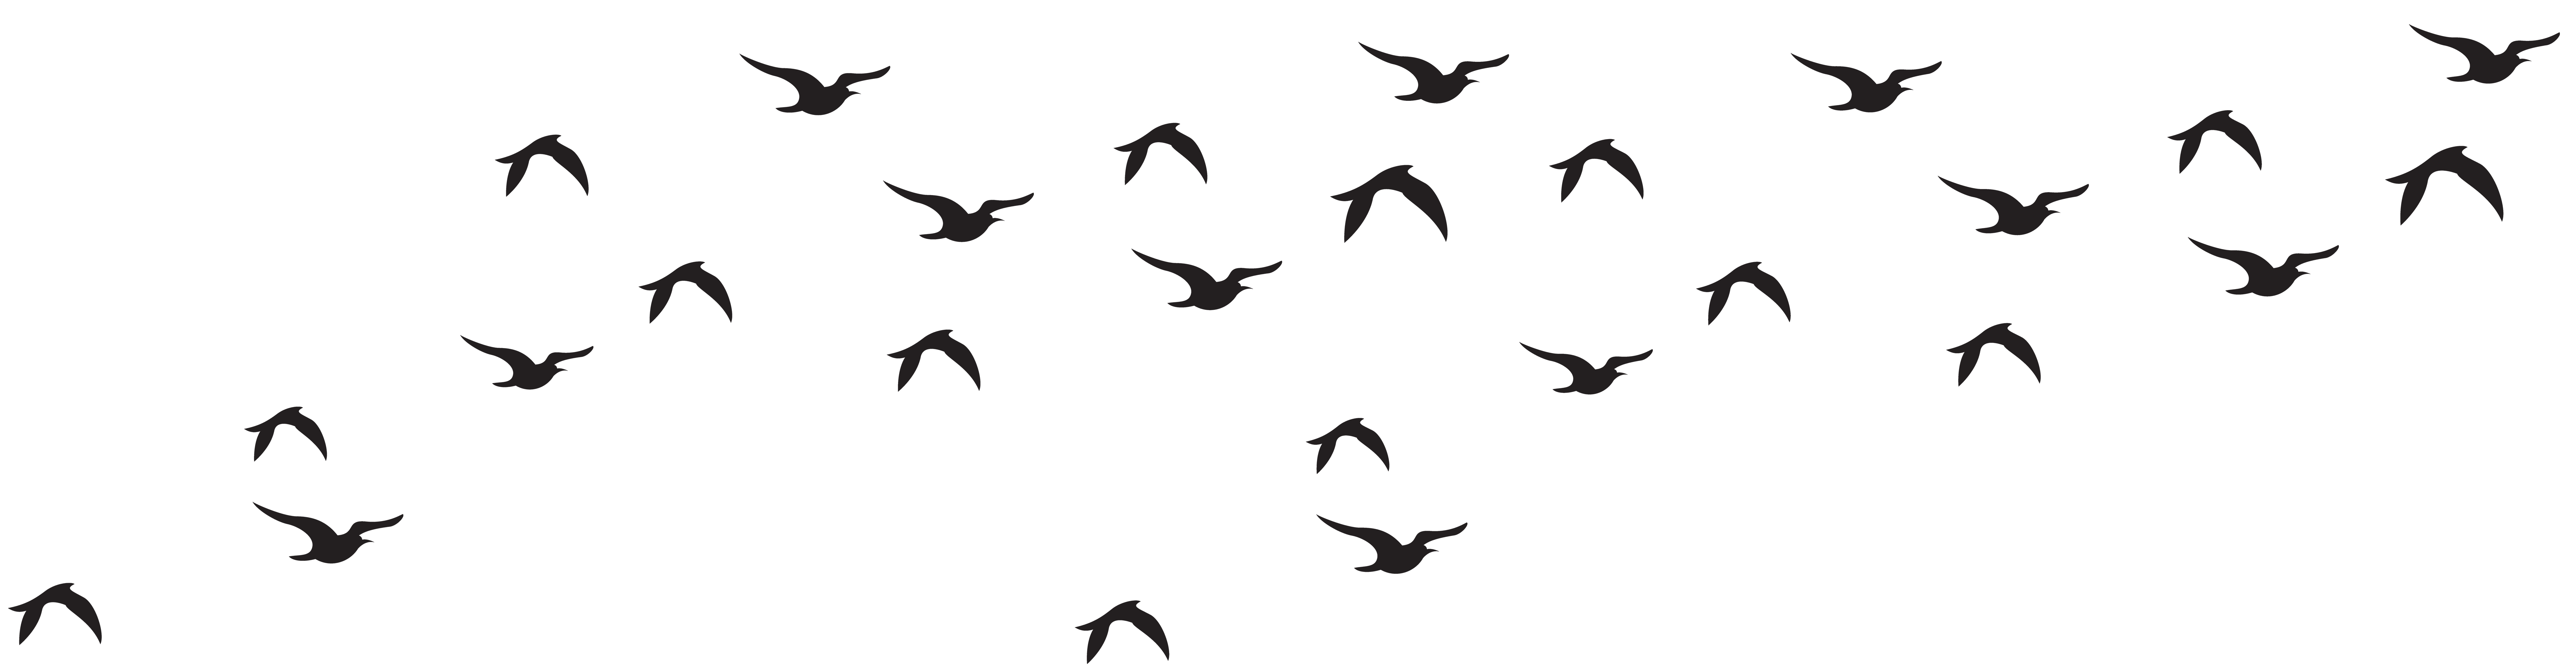 Flock, Birds, Animals, Flight